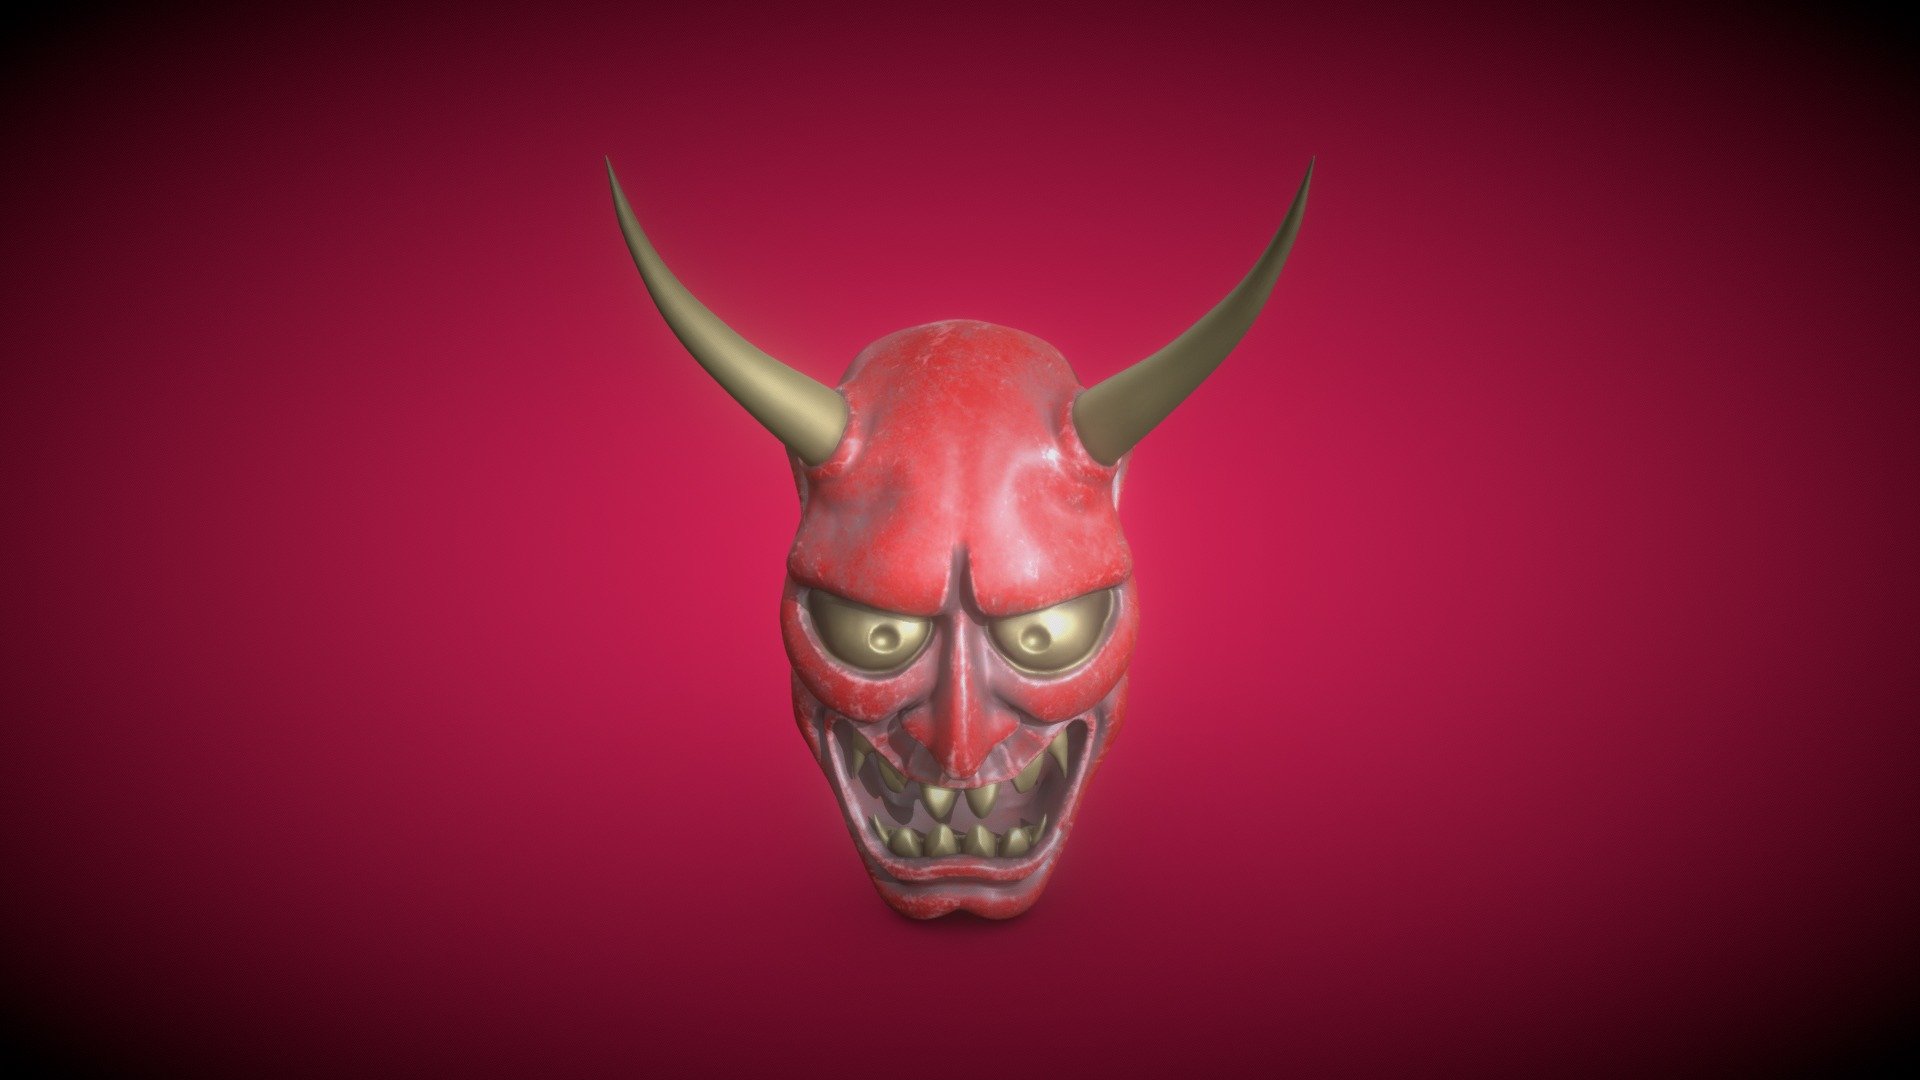 般若面具，はんにゃ，Hannya mask - 3D model by MadCatD (@MadCatD